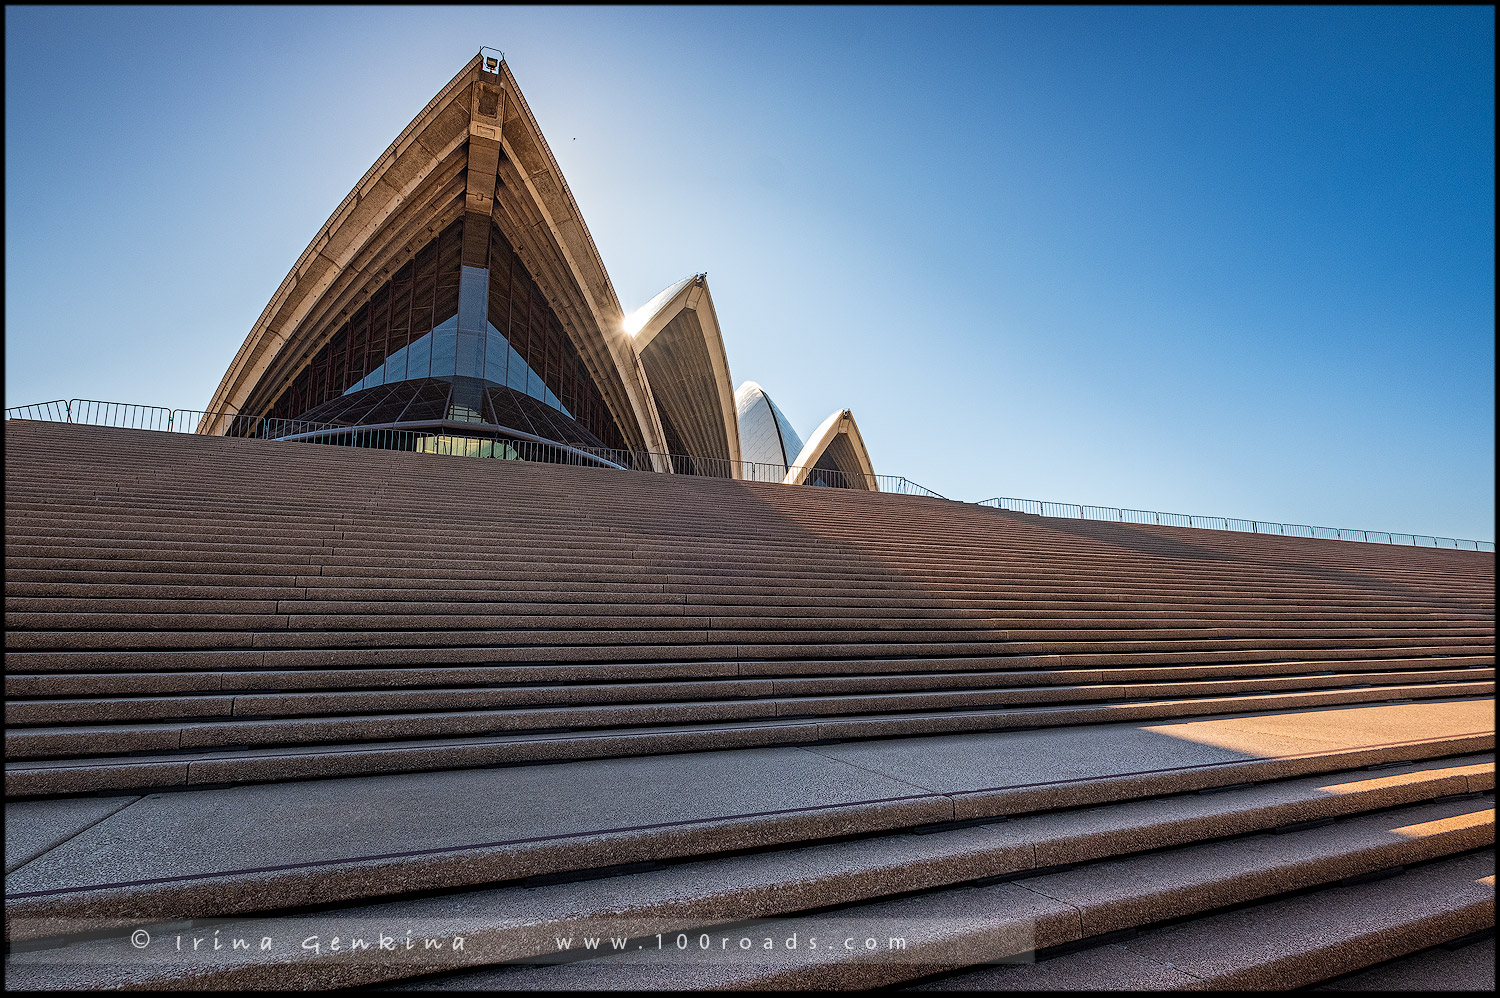 Сиднейская опера (Sydney Opera House), Сидней (Sydneyn), Австралия (Australia)